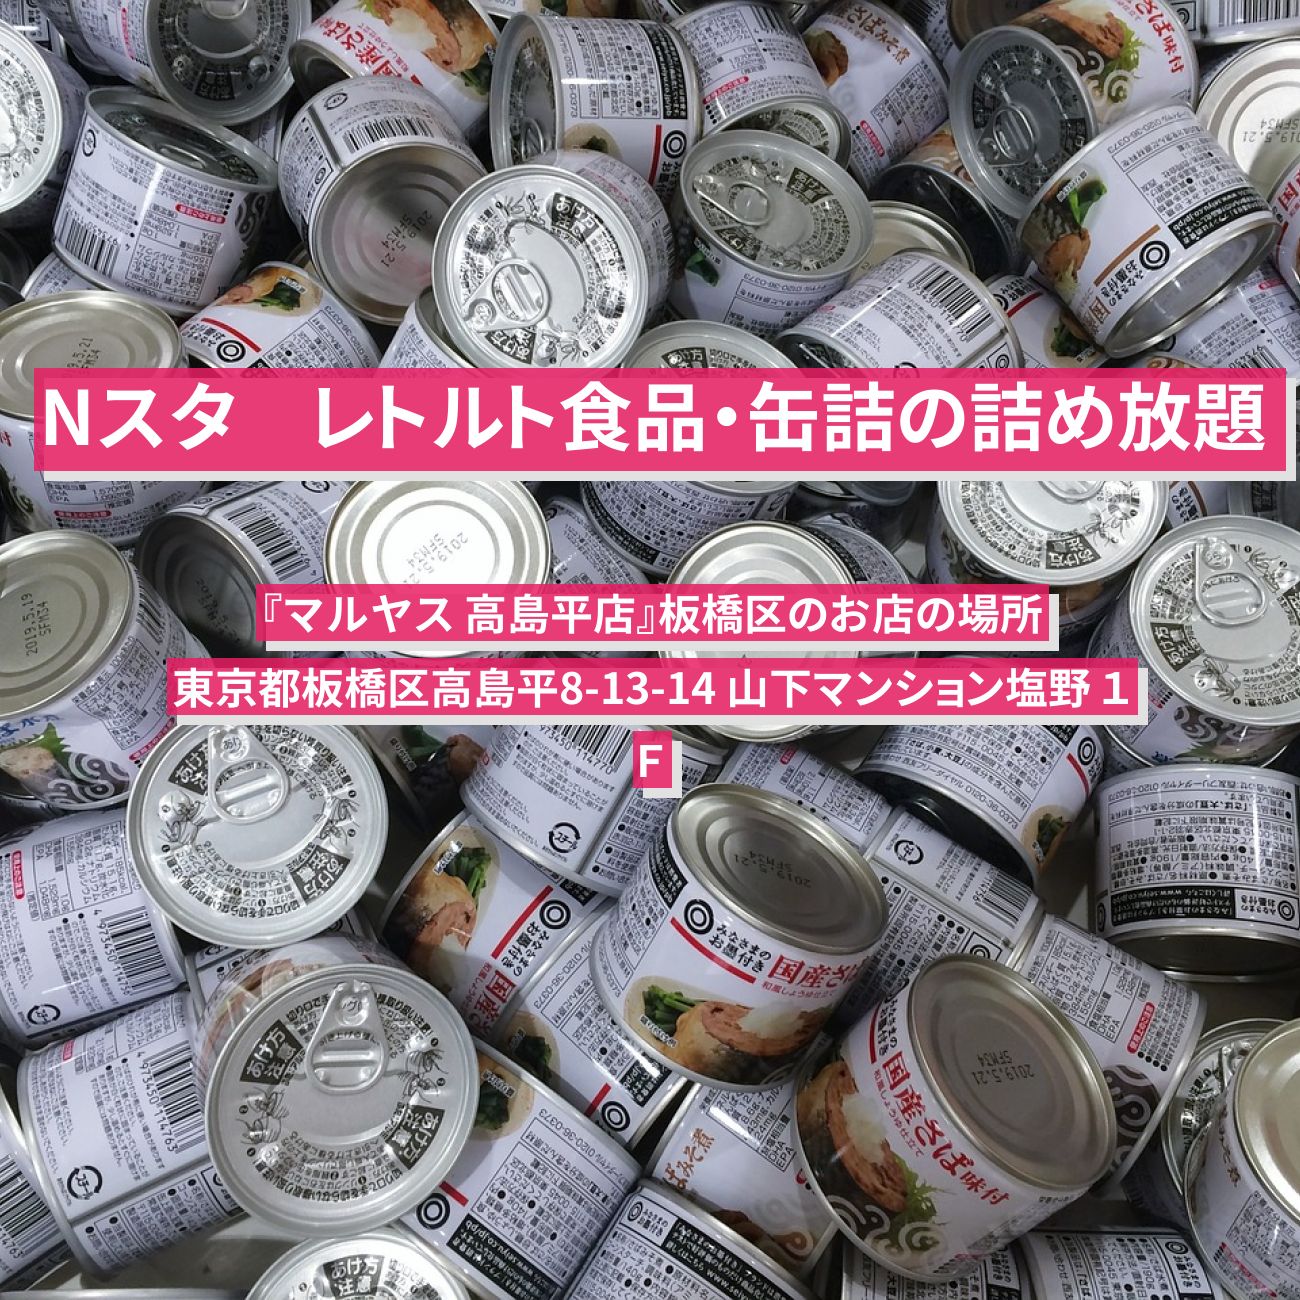 【Nスタ】レトルト食品・缶詰の詰め放題『マルヤス 高島平店』板橋区のお店の場所